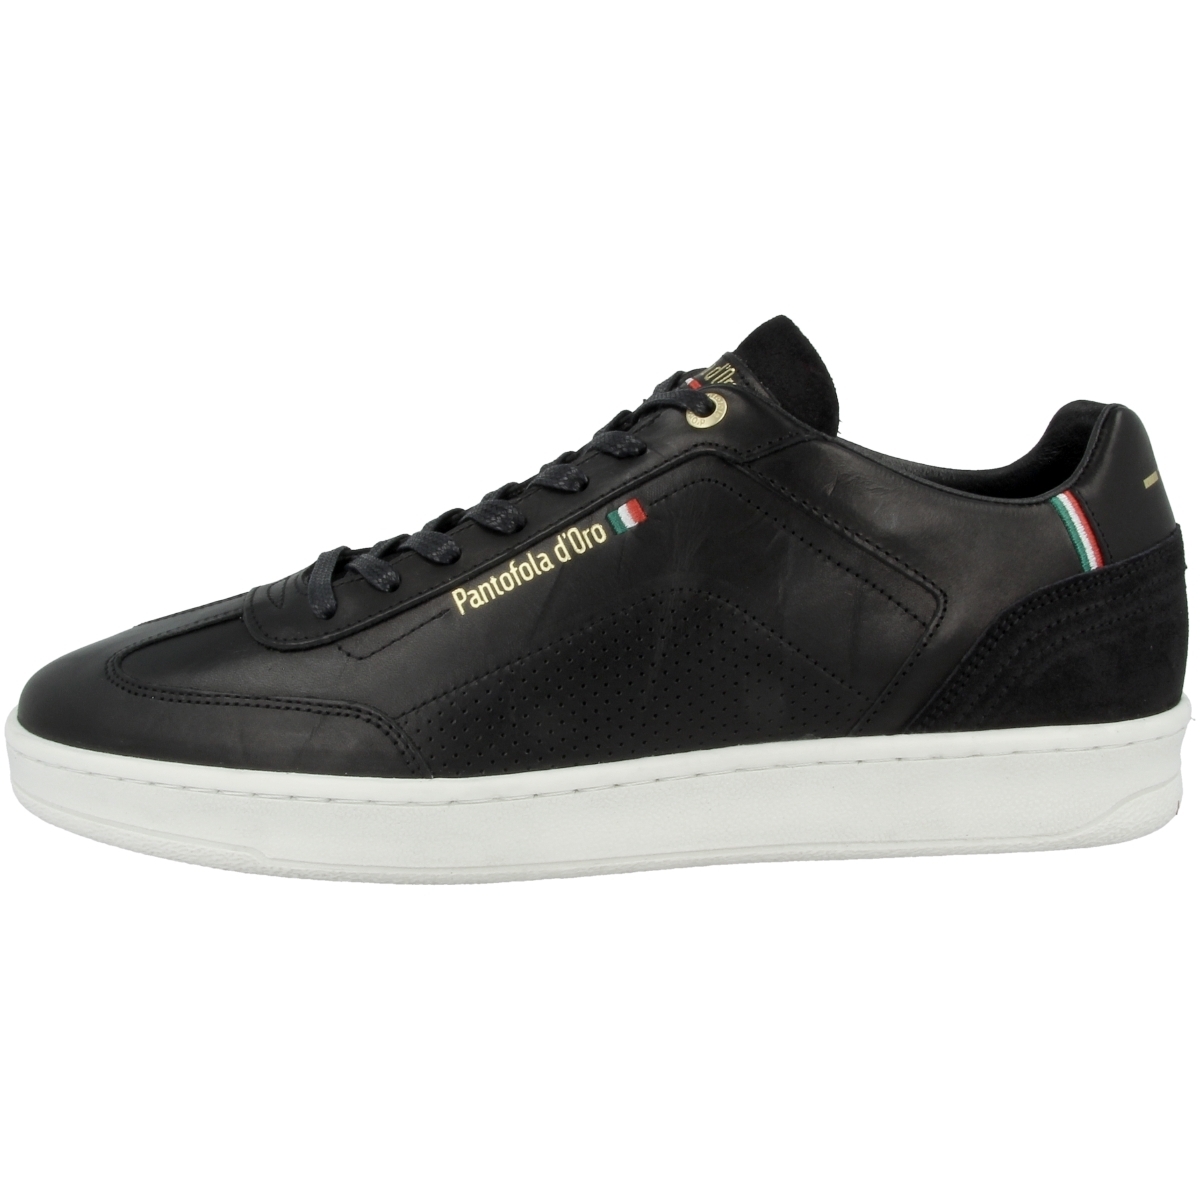 Pantofola d'Oro Messina Uomo Low Sneaker low schwarz